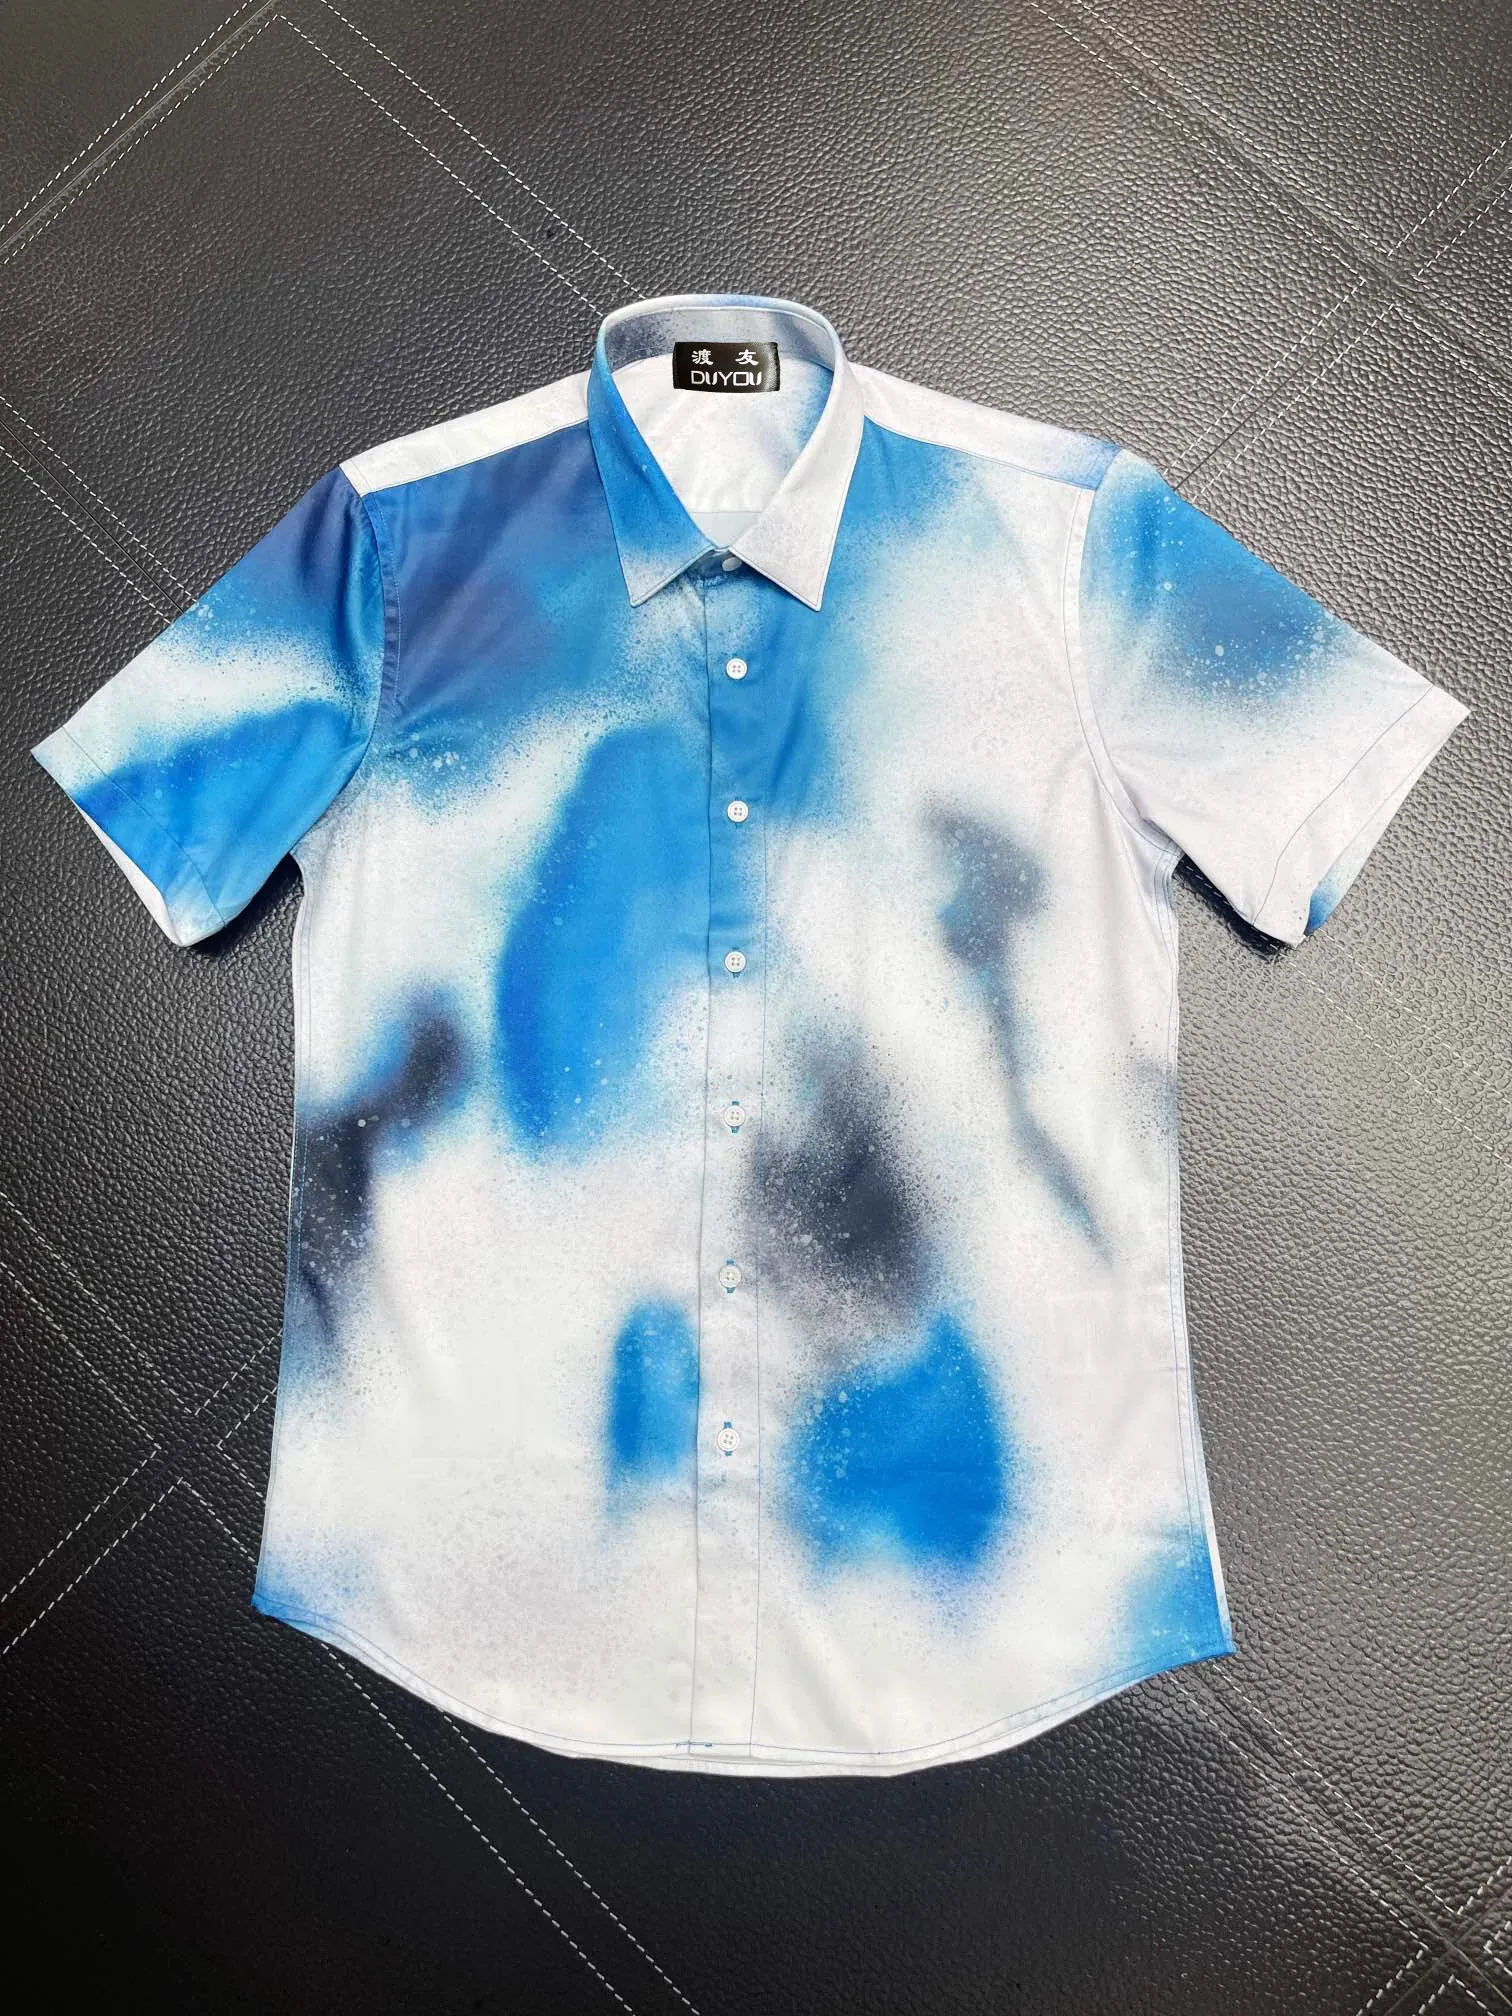 Mäns bomullsklänningskjortor Splash Ink Print Kort ärm Camisas Masculina Casual Slim Fit Mens Business Shirt 101660